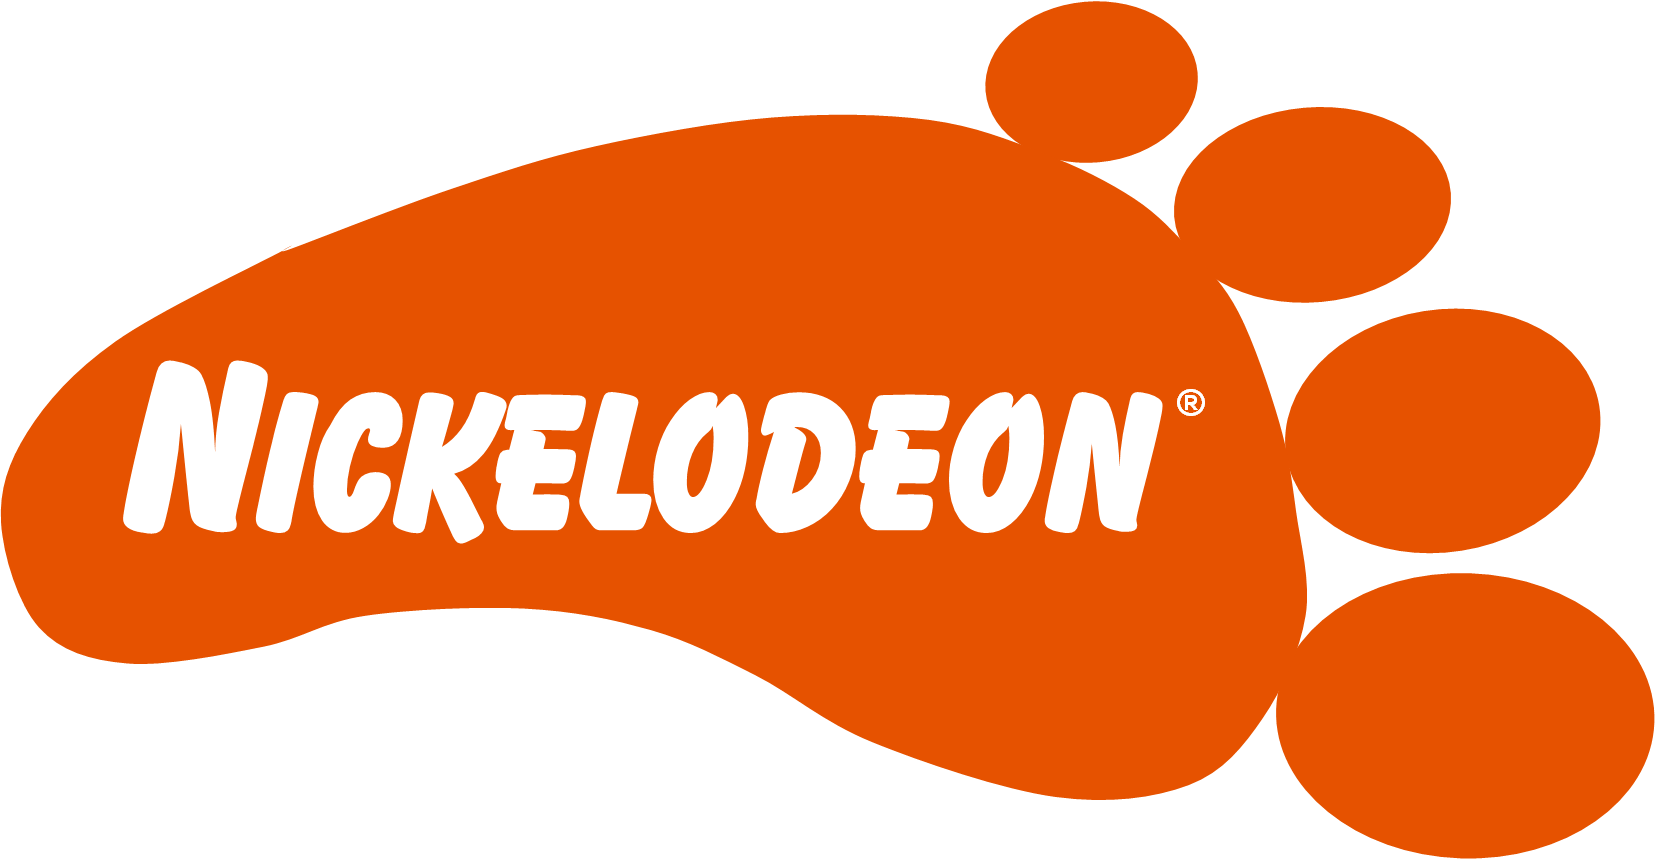 Old Nickelodeon Logo - Nickelodeon Logos